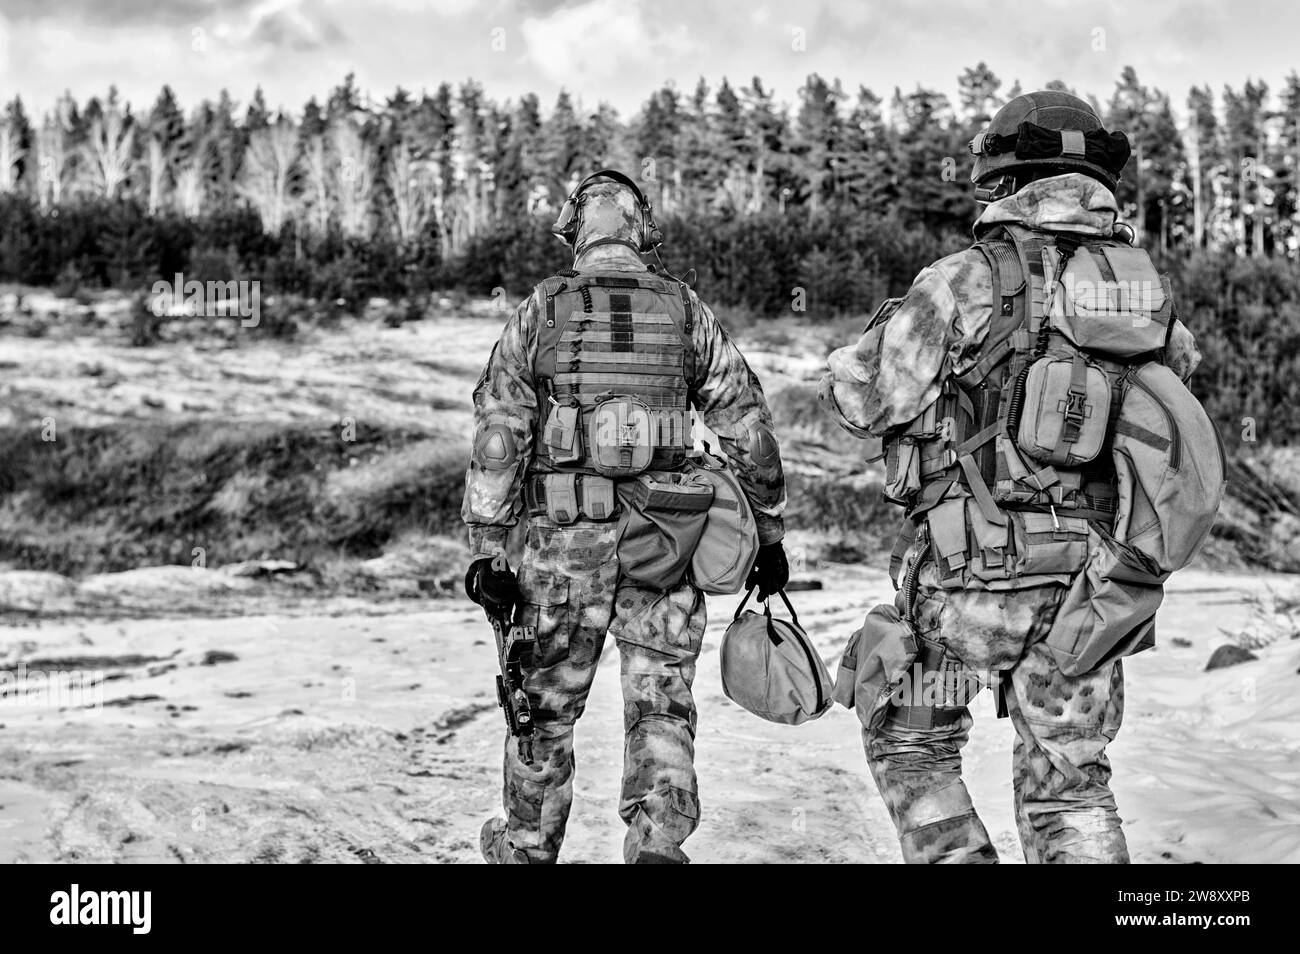 Zwei Soldaten einer Spezialeinheit bereiten sich auf eine gefährliche Mission vor. Gemischte Medien Stockfoto